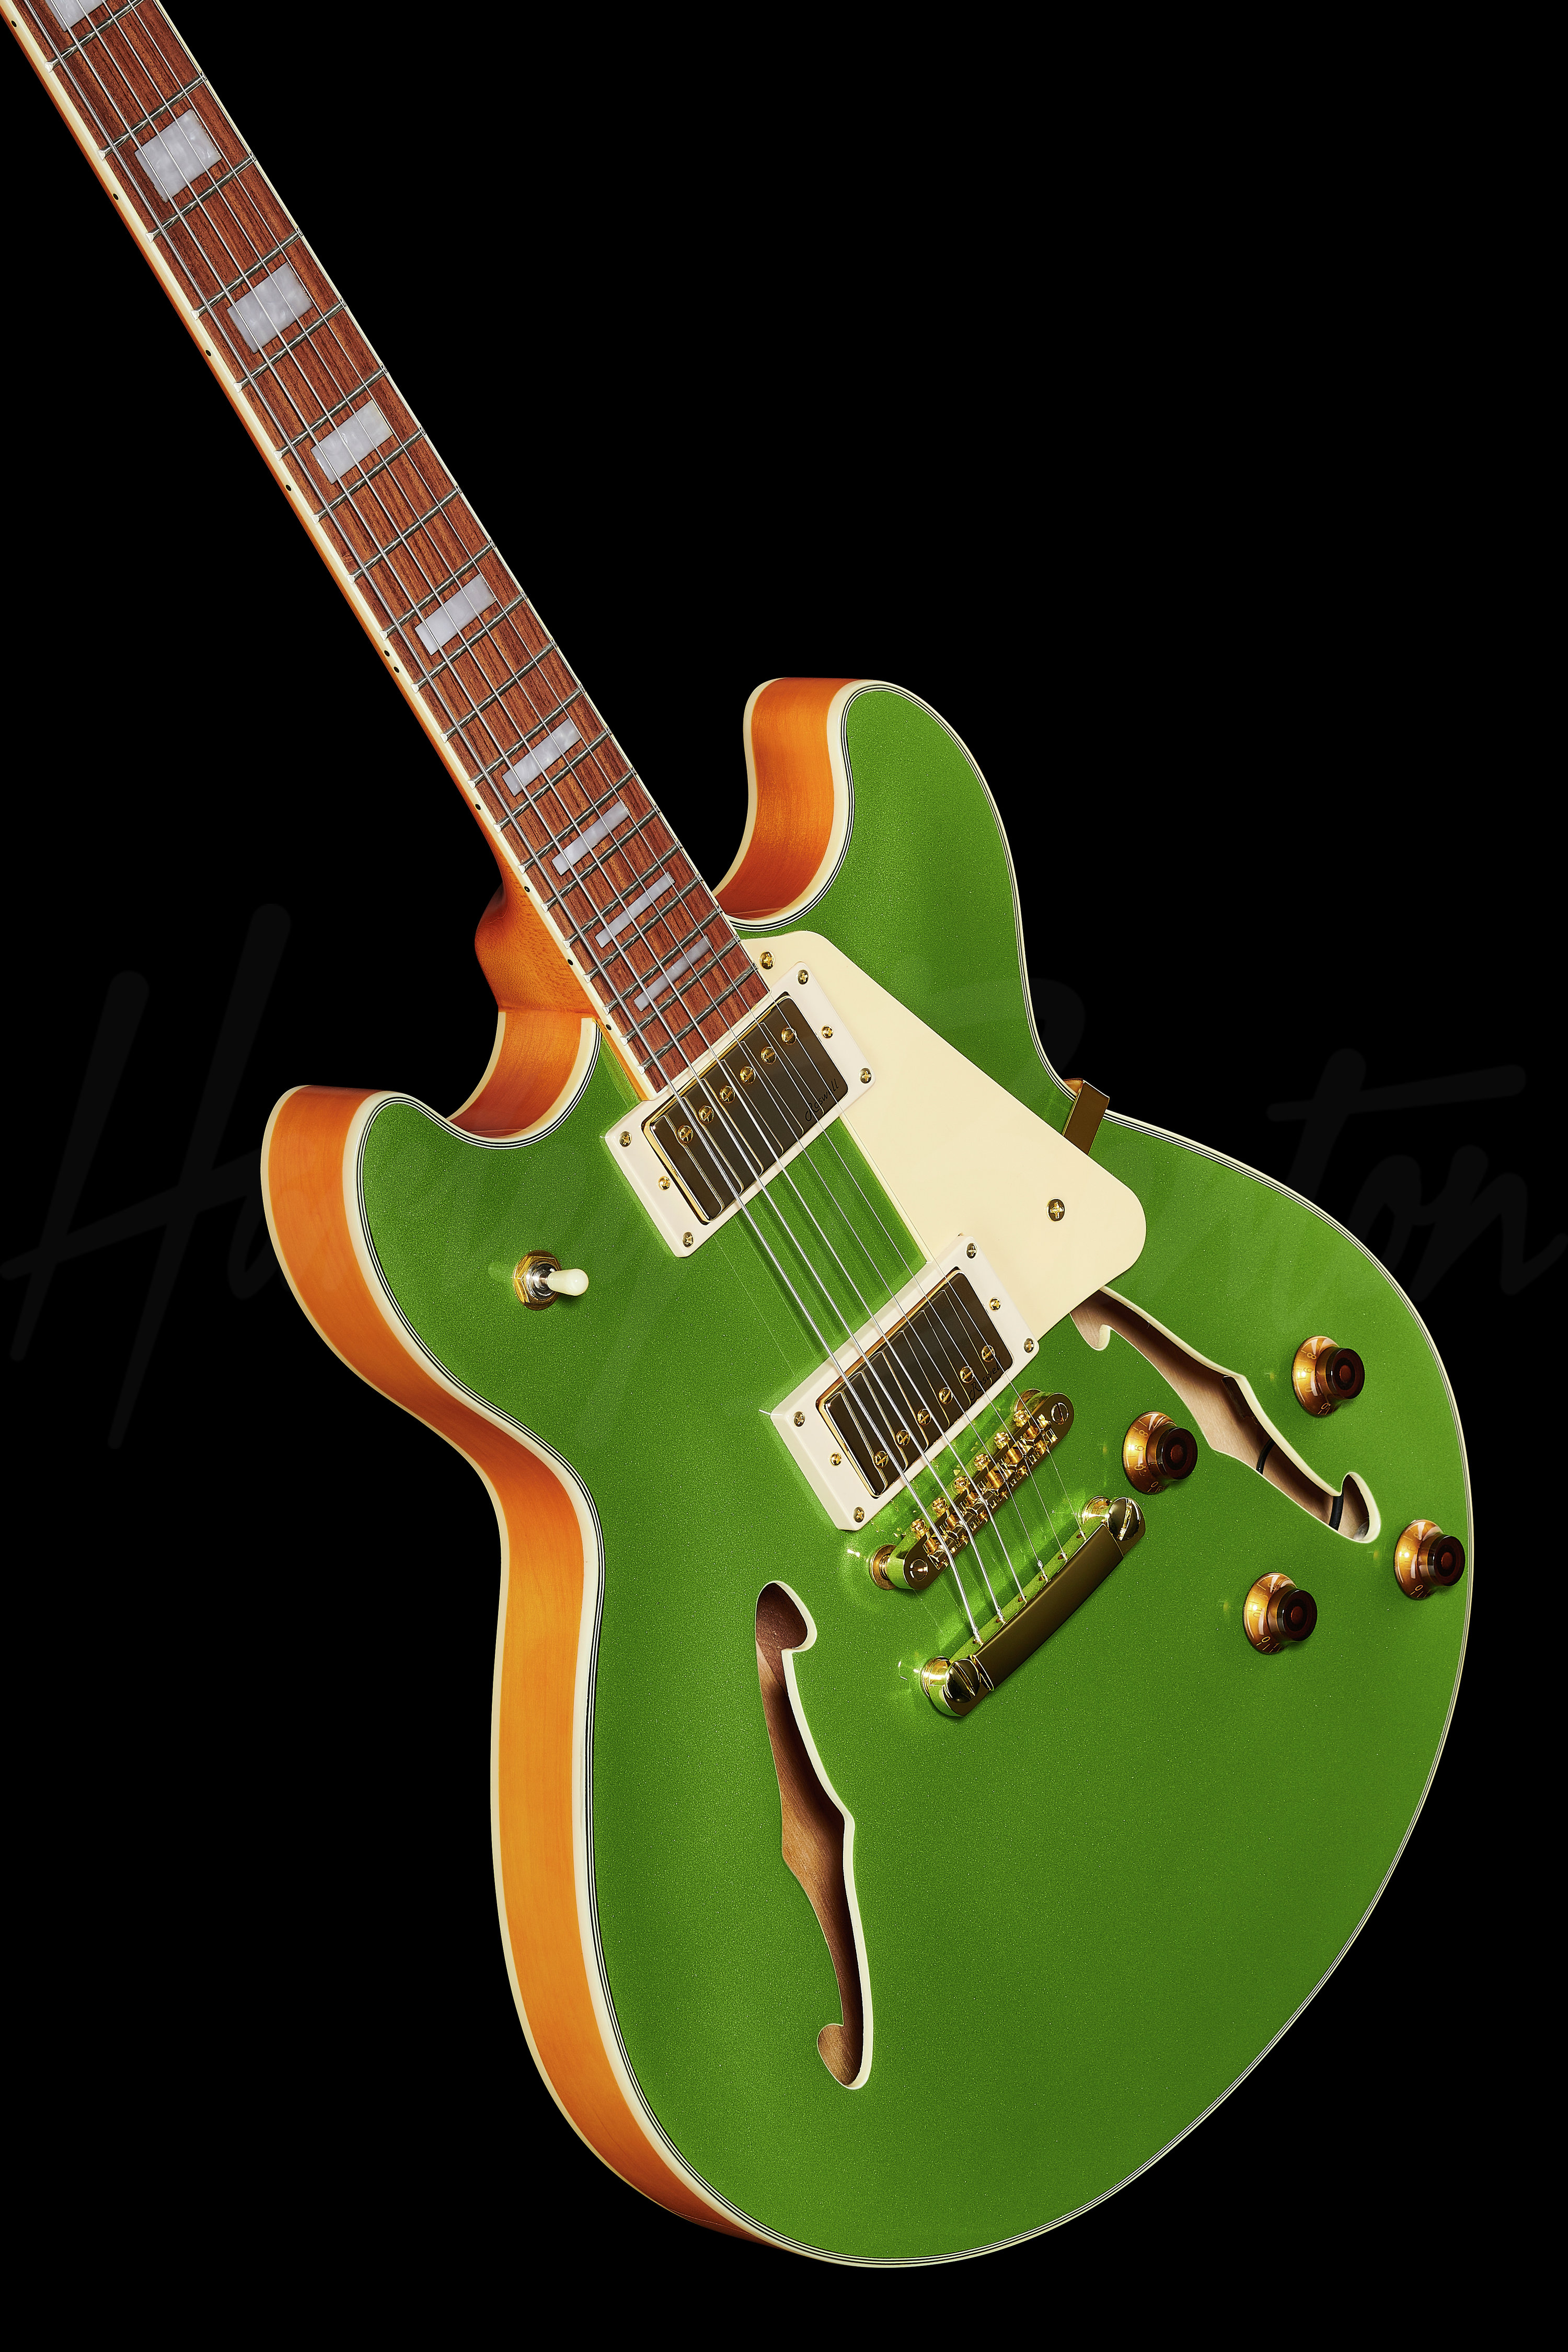 HB-35Plus Metallic Green - Harley Benton